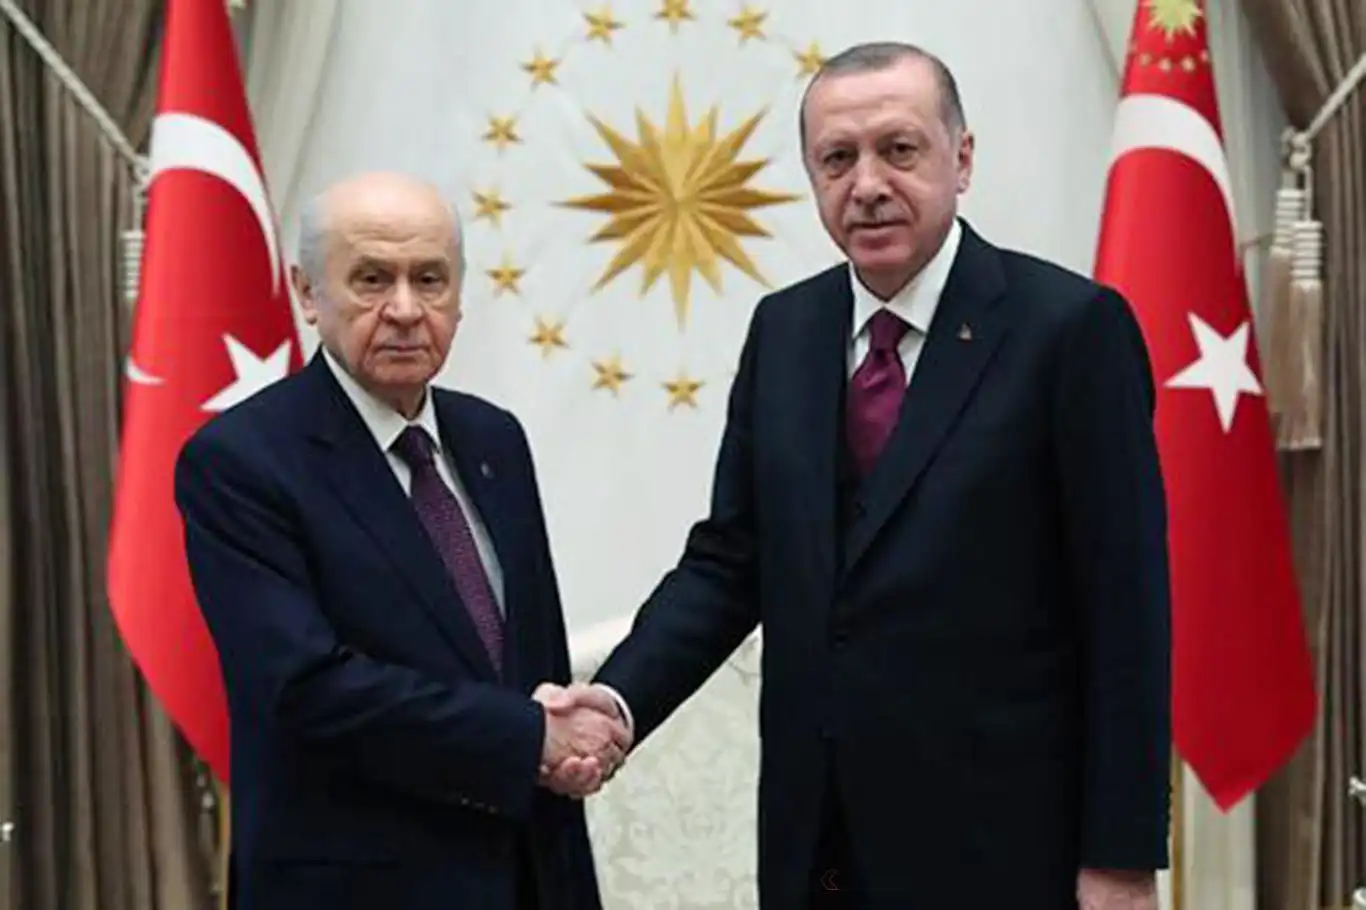 Cumhurbaşkanı Erdoğan, Bahçeli ile görüşme düzenleyecek